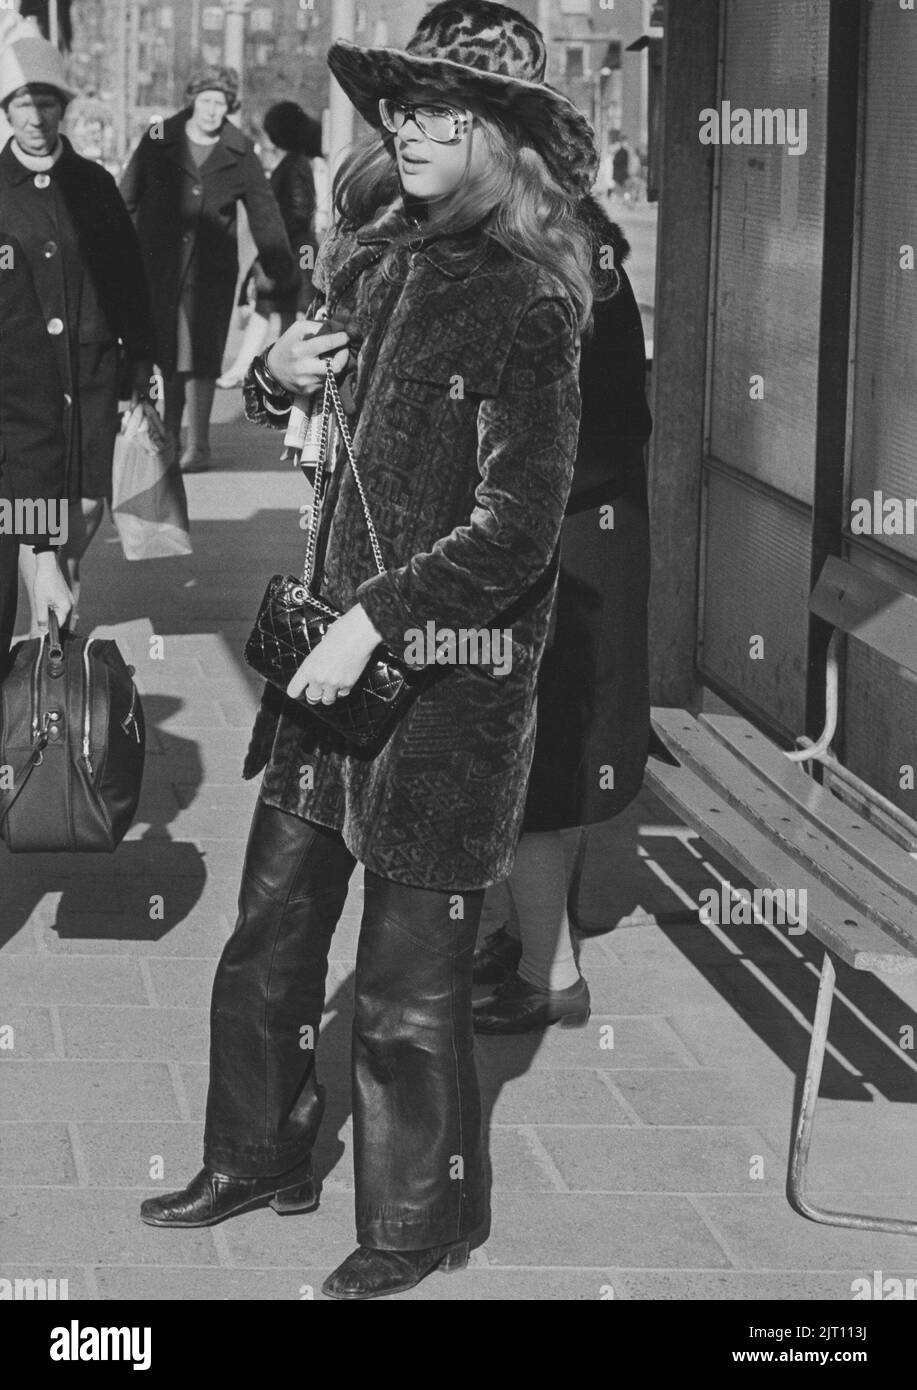 En la década de 1970s. Una mujer joven en la calle vestida con pantalones de cuero, abrigo medio largo de tela de terciopelo y sombrero a juego. Las gafas son típicas 1970s. El año es 1970. Foto de stock